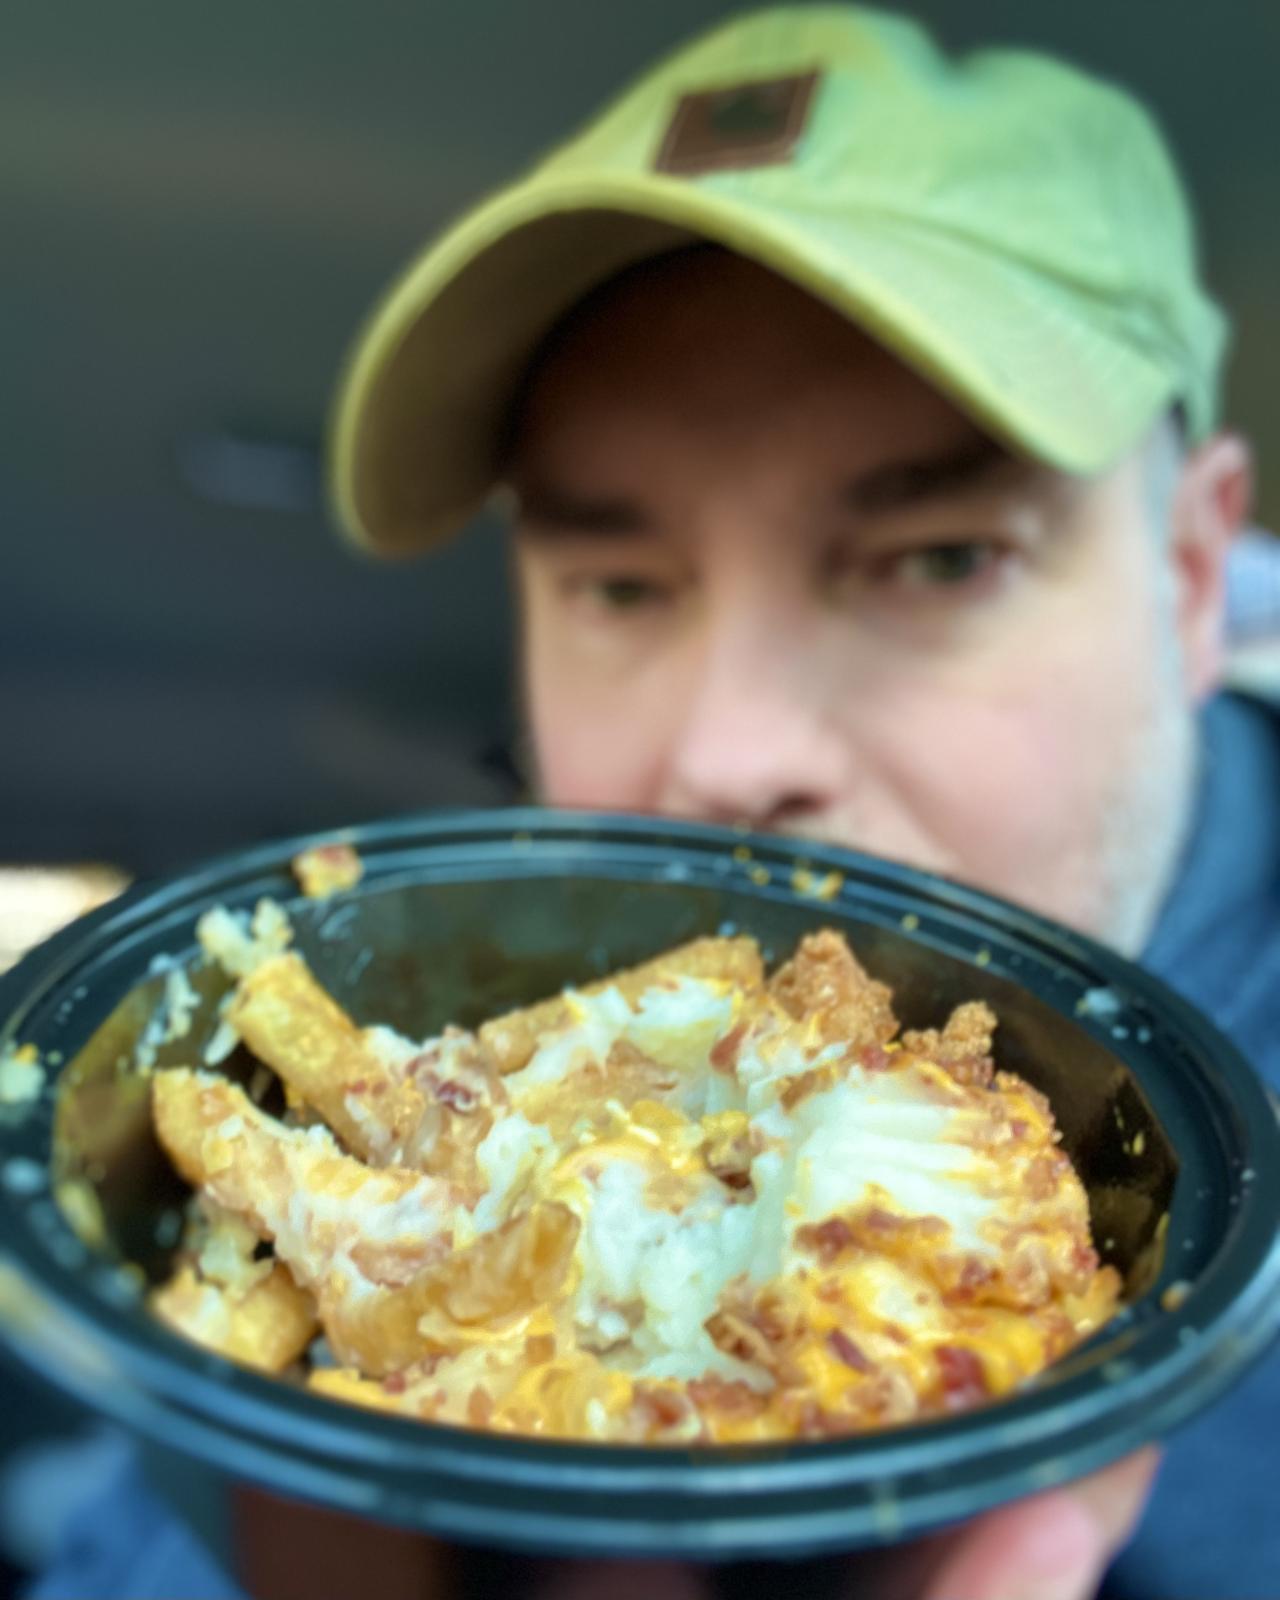 Matt Calkins behind a half-eaten Kentucky Fried Chicken (KFC) Smash'd Potato Bowl With Nuggets.